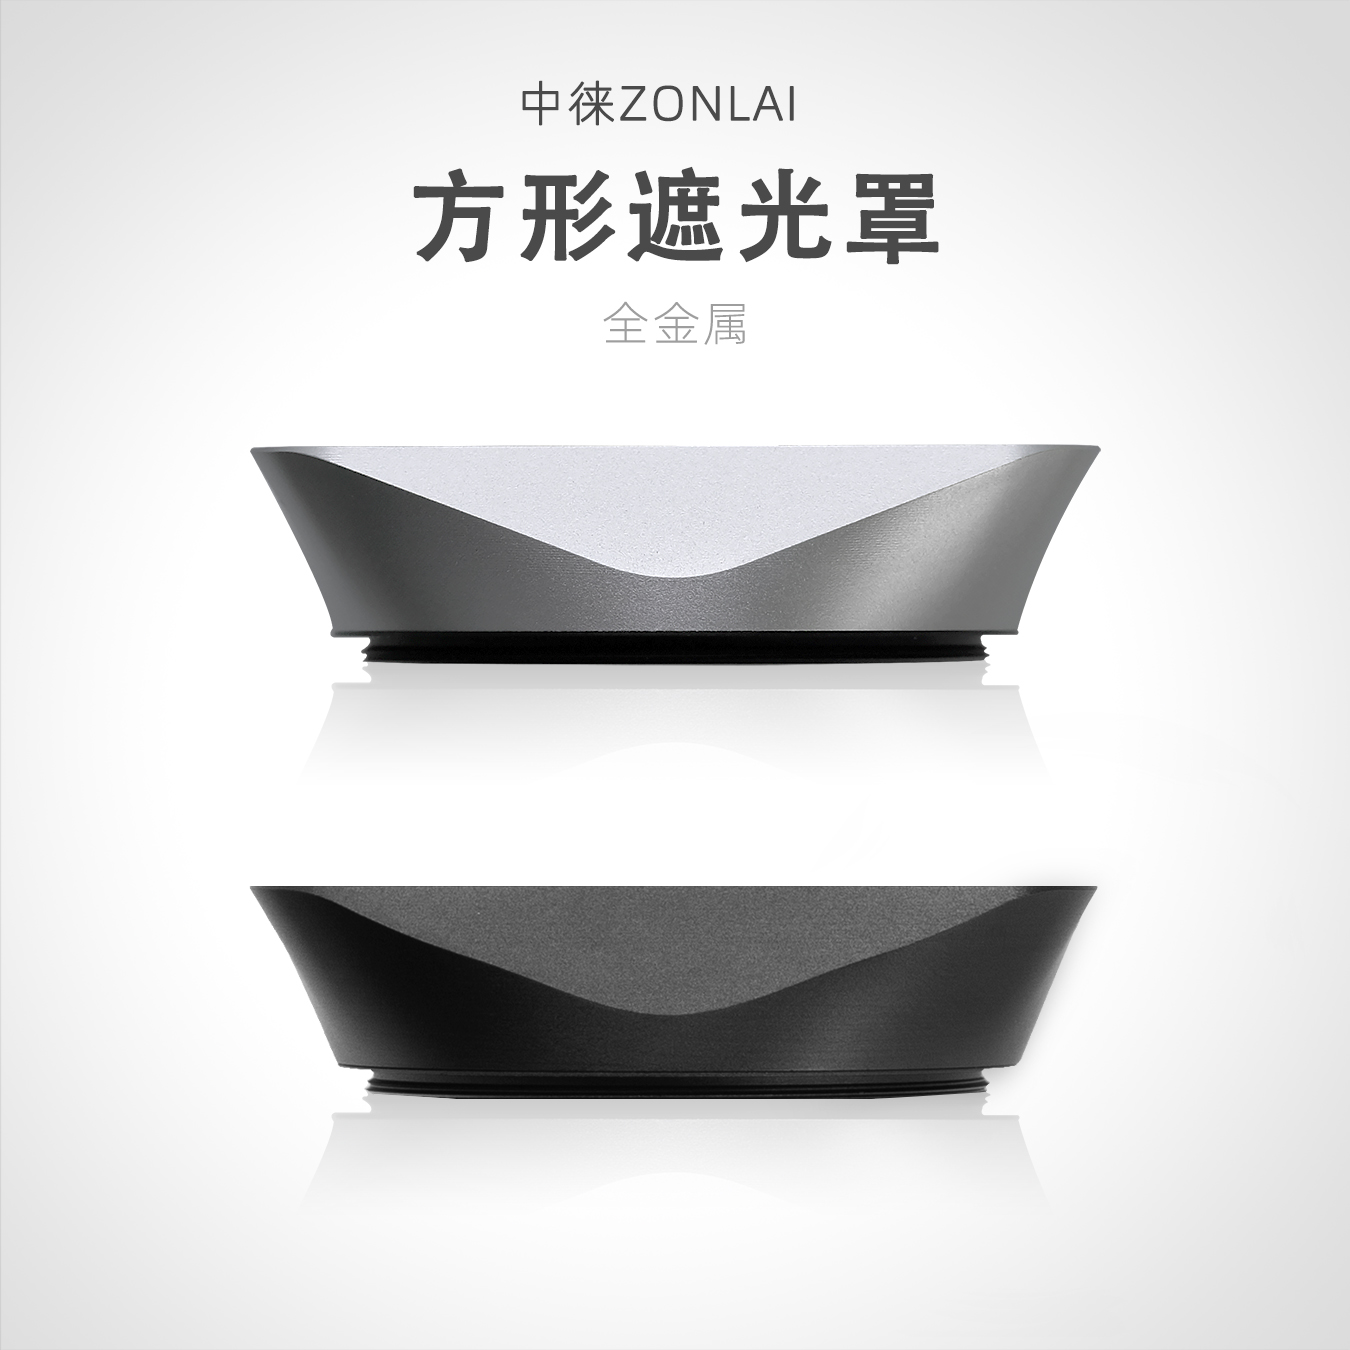 Zhonglai 22mm f1.8 라이카 렌즈 후지 렌즈 올 메탈용 46mm Zhonglai 스퀘어 후드